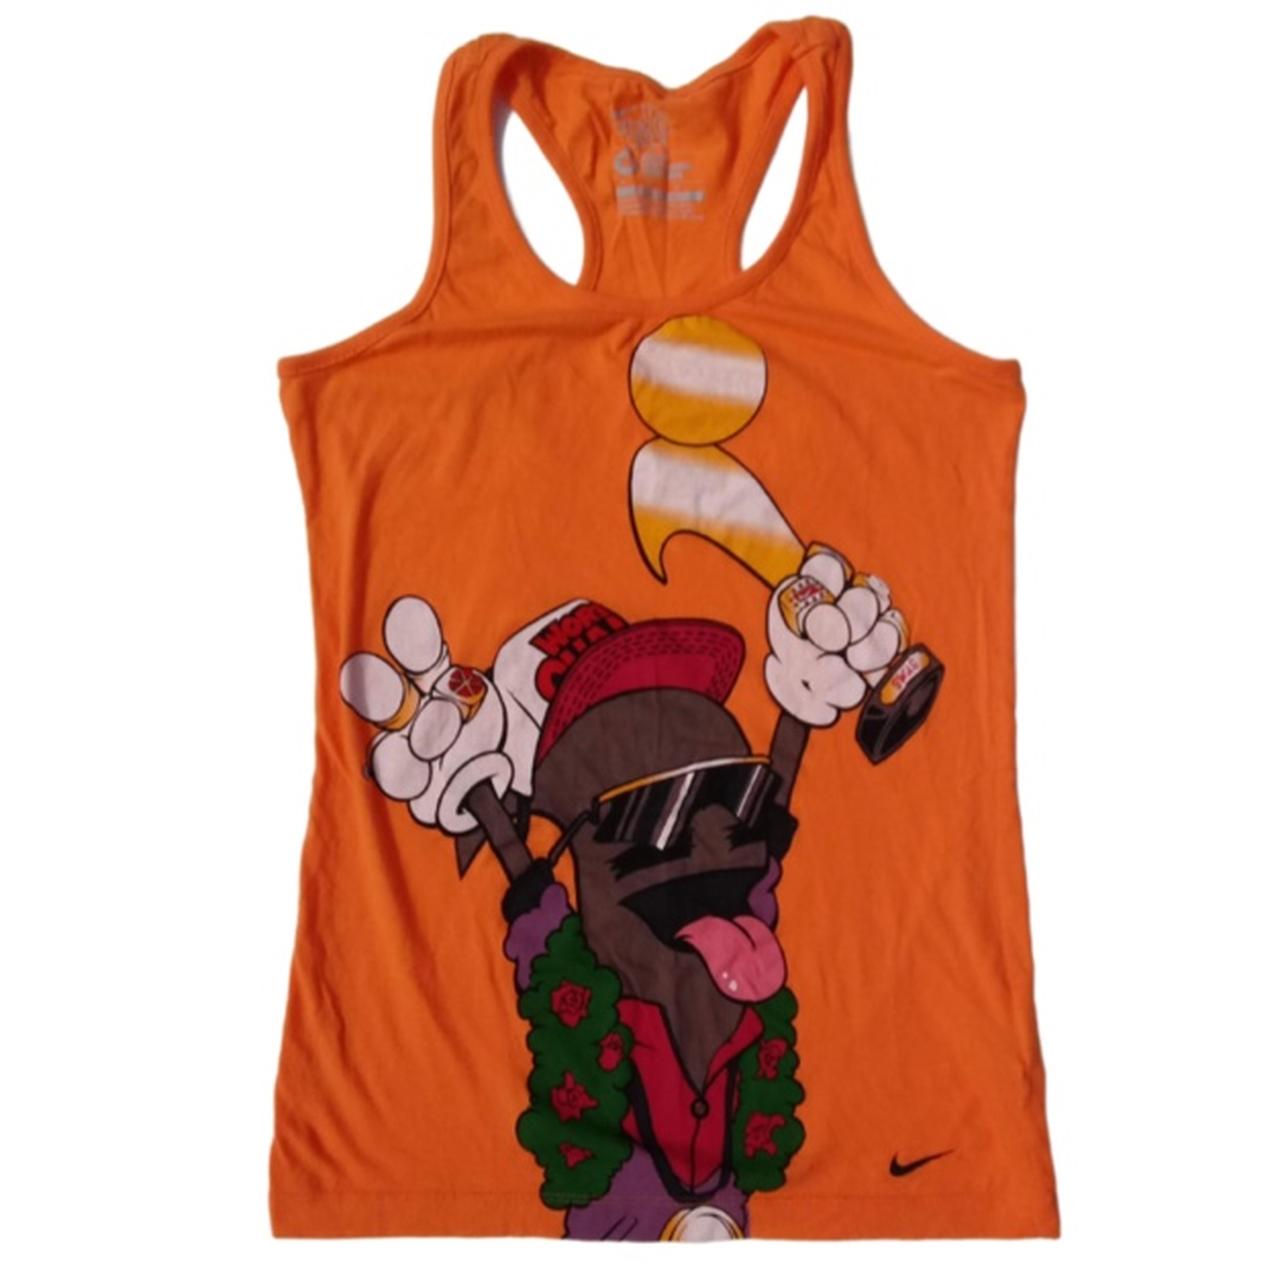 Nike Women's Orange Vests-tanks-camis